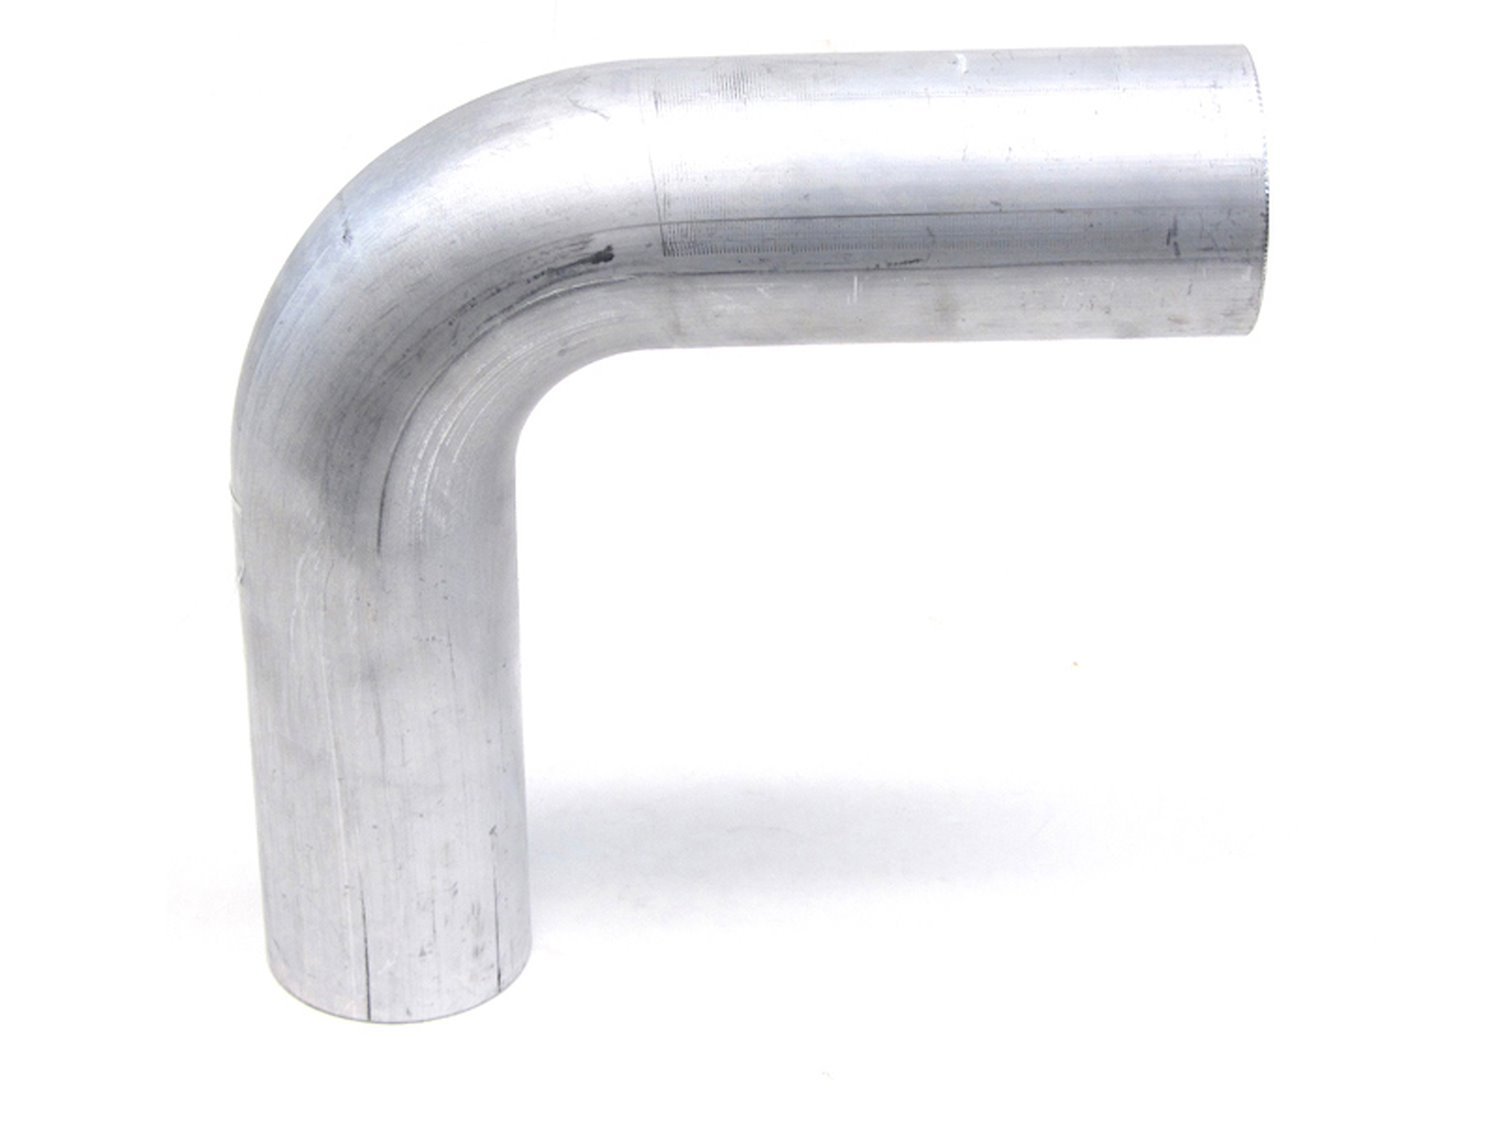 AT90-100-CLR-2 Aluminum Elbow Tube, 6061 Aluminum, 90-Degree Bend Elbow Tubing, 1 in. OD, Tight Radius, 2 in. CLR